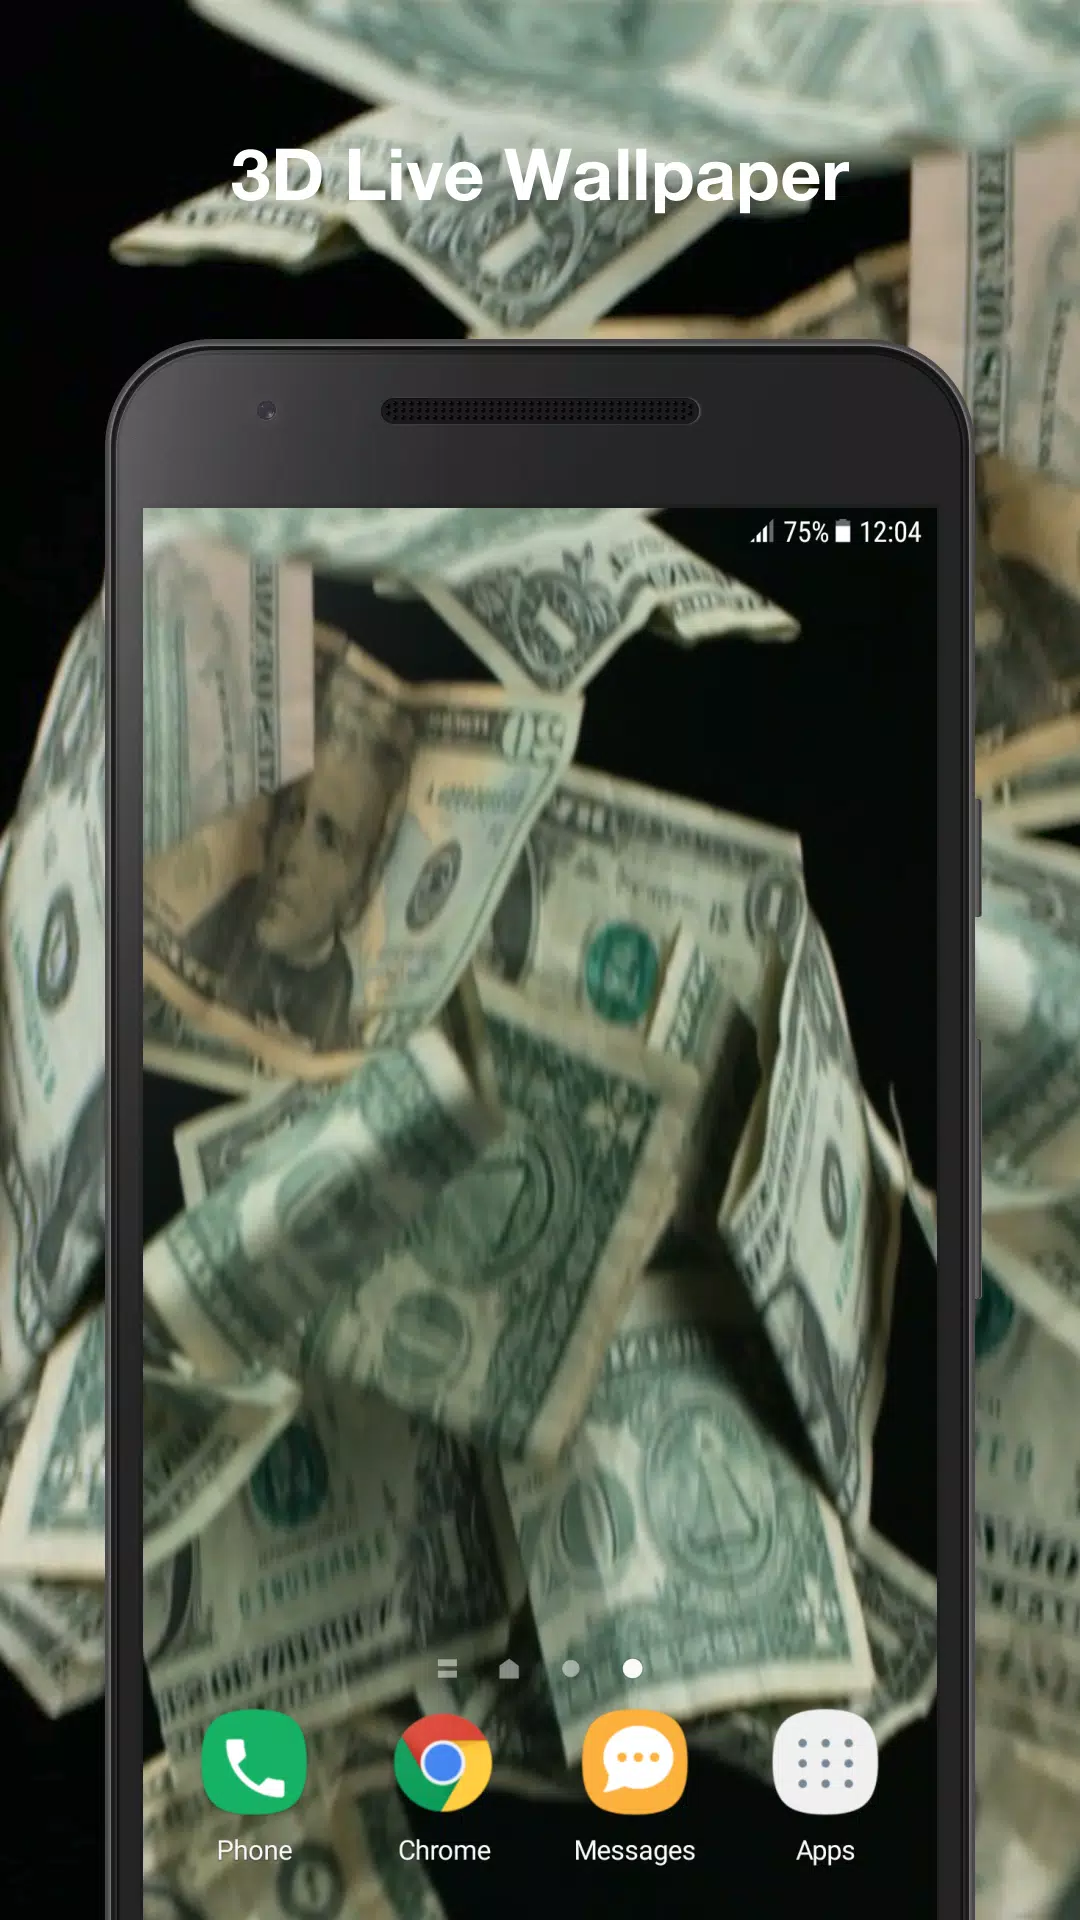 Hình nền tiền 3D động là một trải nghiệm tuyệt vời cho điện thoại Android của bạn. Với hình ảnh tiền 3D rơi xuống màn hình, bạn sẽ có cảm giác như đang thực sự nắm trong tay những cơn gió tiền tươi mát. Tải ngay APK 3D này và trải nghiệm ngay hôm nay!